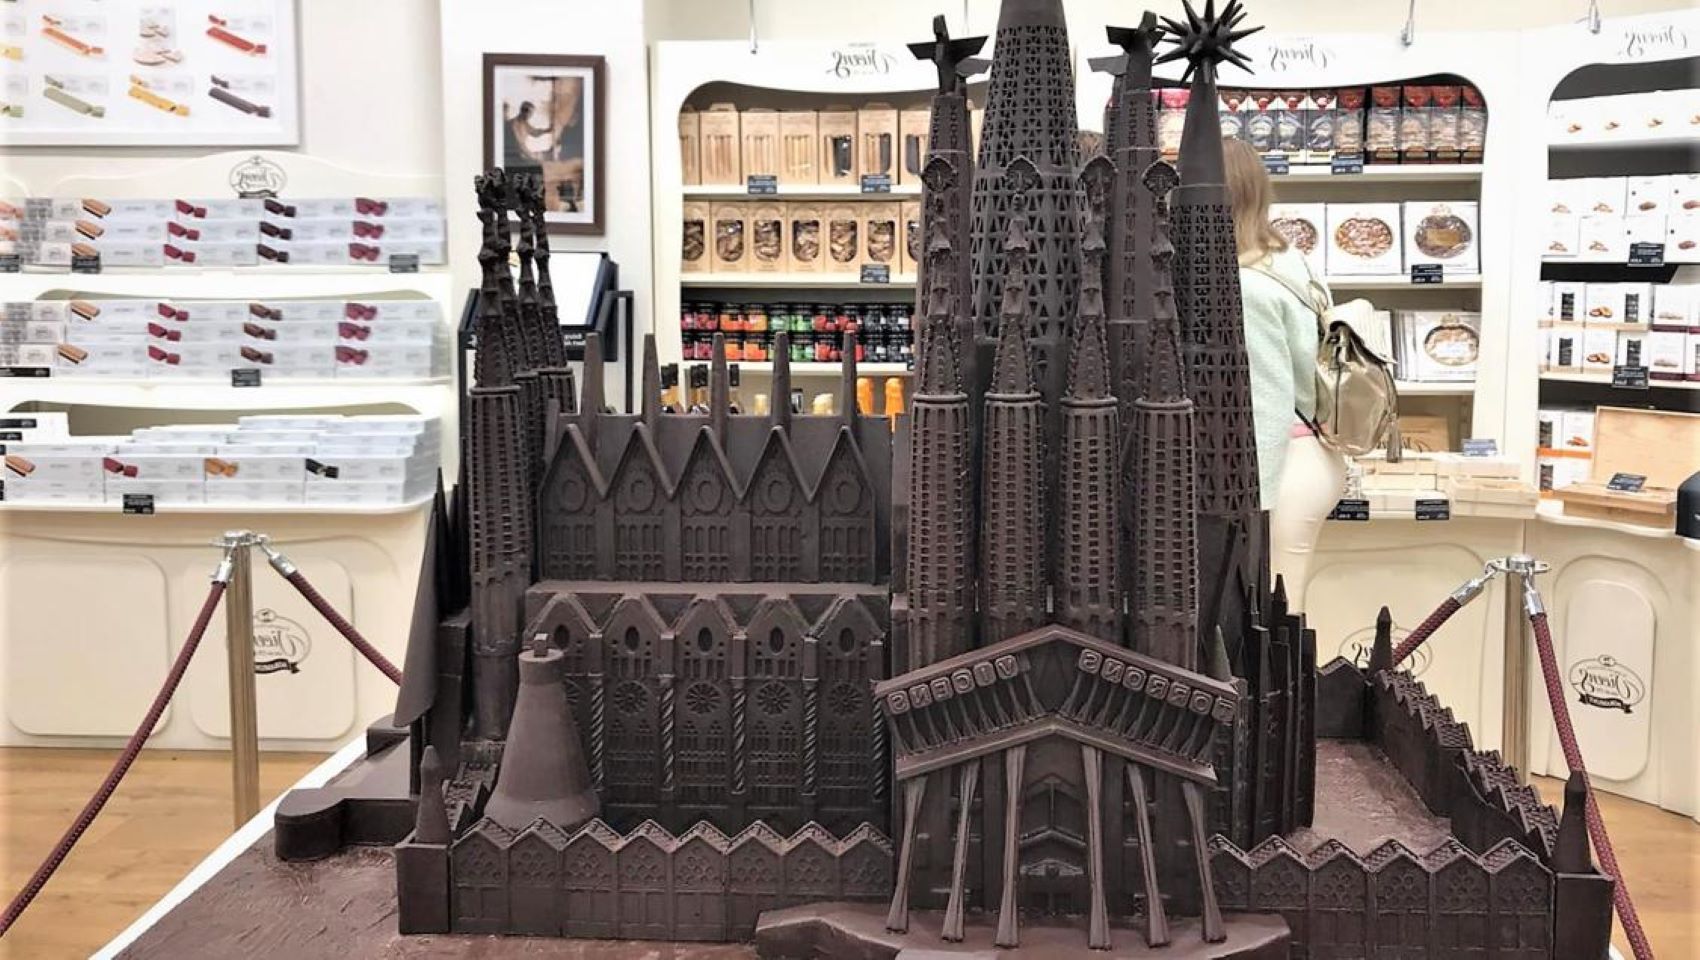 Torrons Vicens construeix la Sagrada Família. 167 kg de xocolata negra i mig metre d'alçada